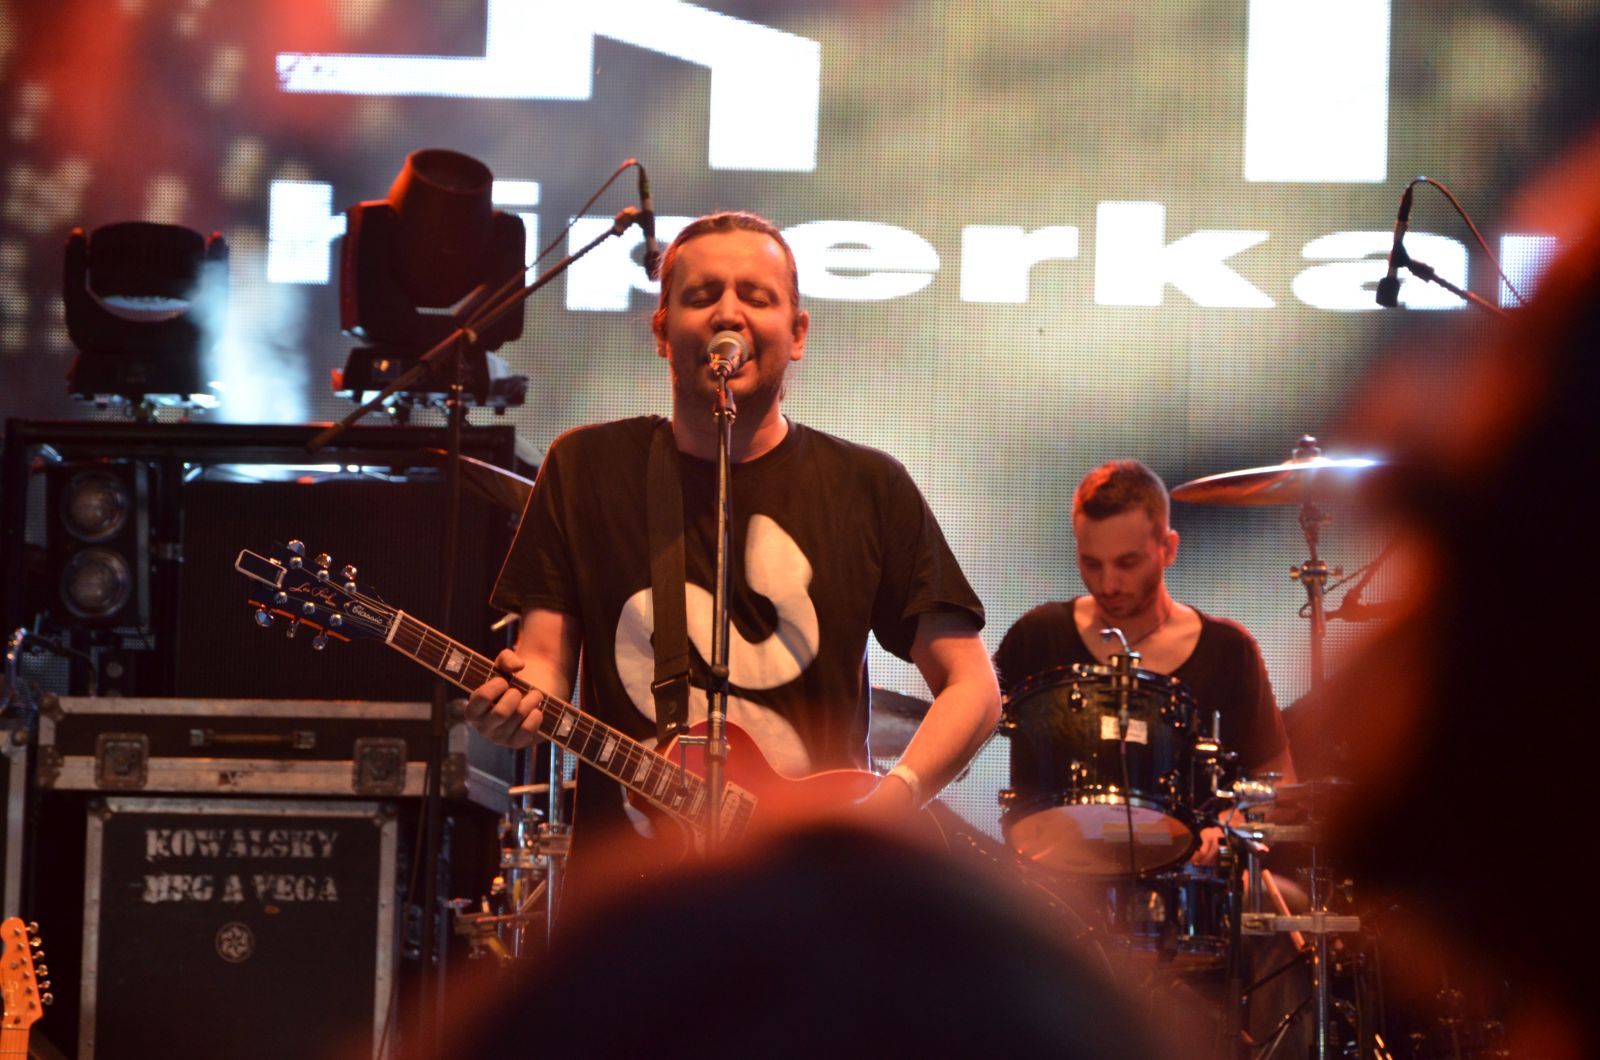 Bár lemezbemutató koncertként brandelték, a legfontosabb Hiperkarma dalok elhangzottak a szombat esti koncerten. 